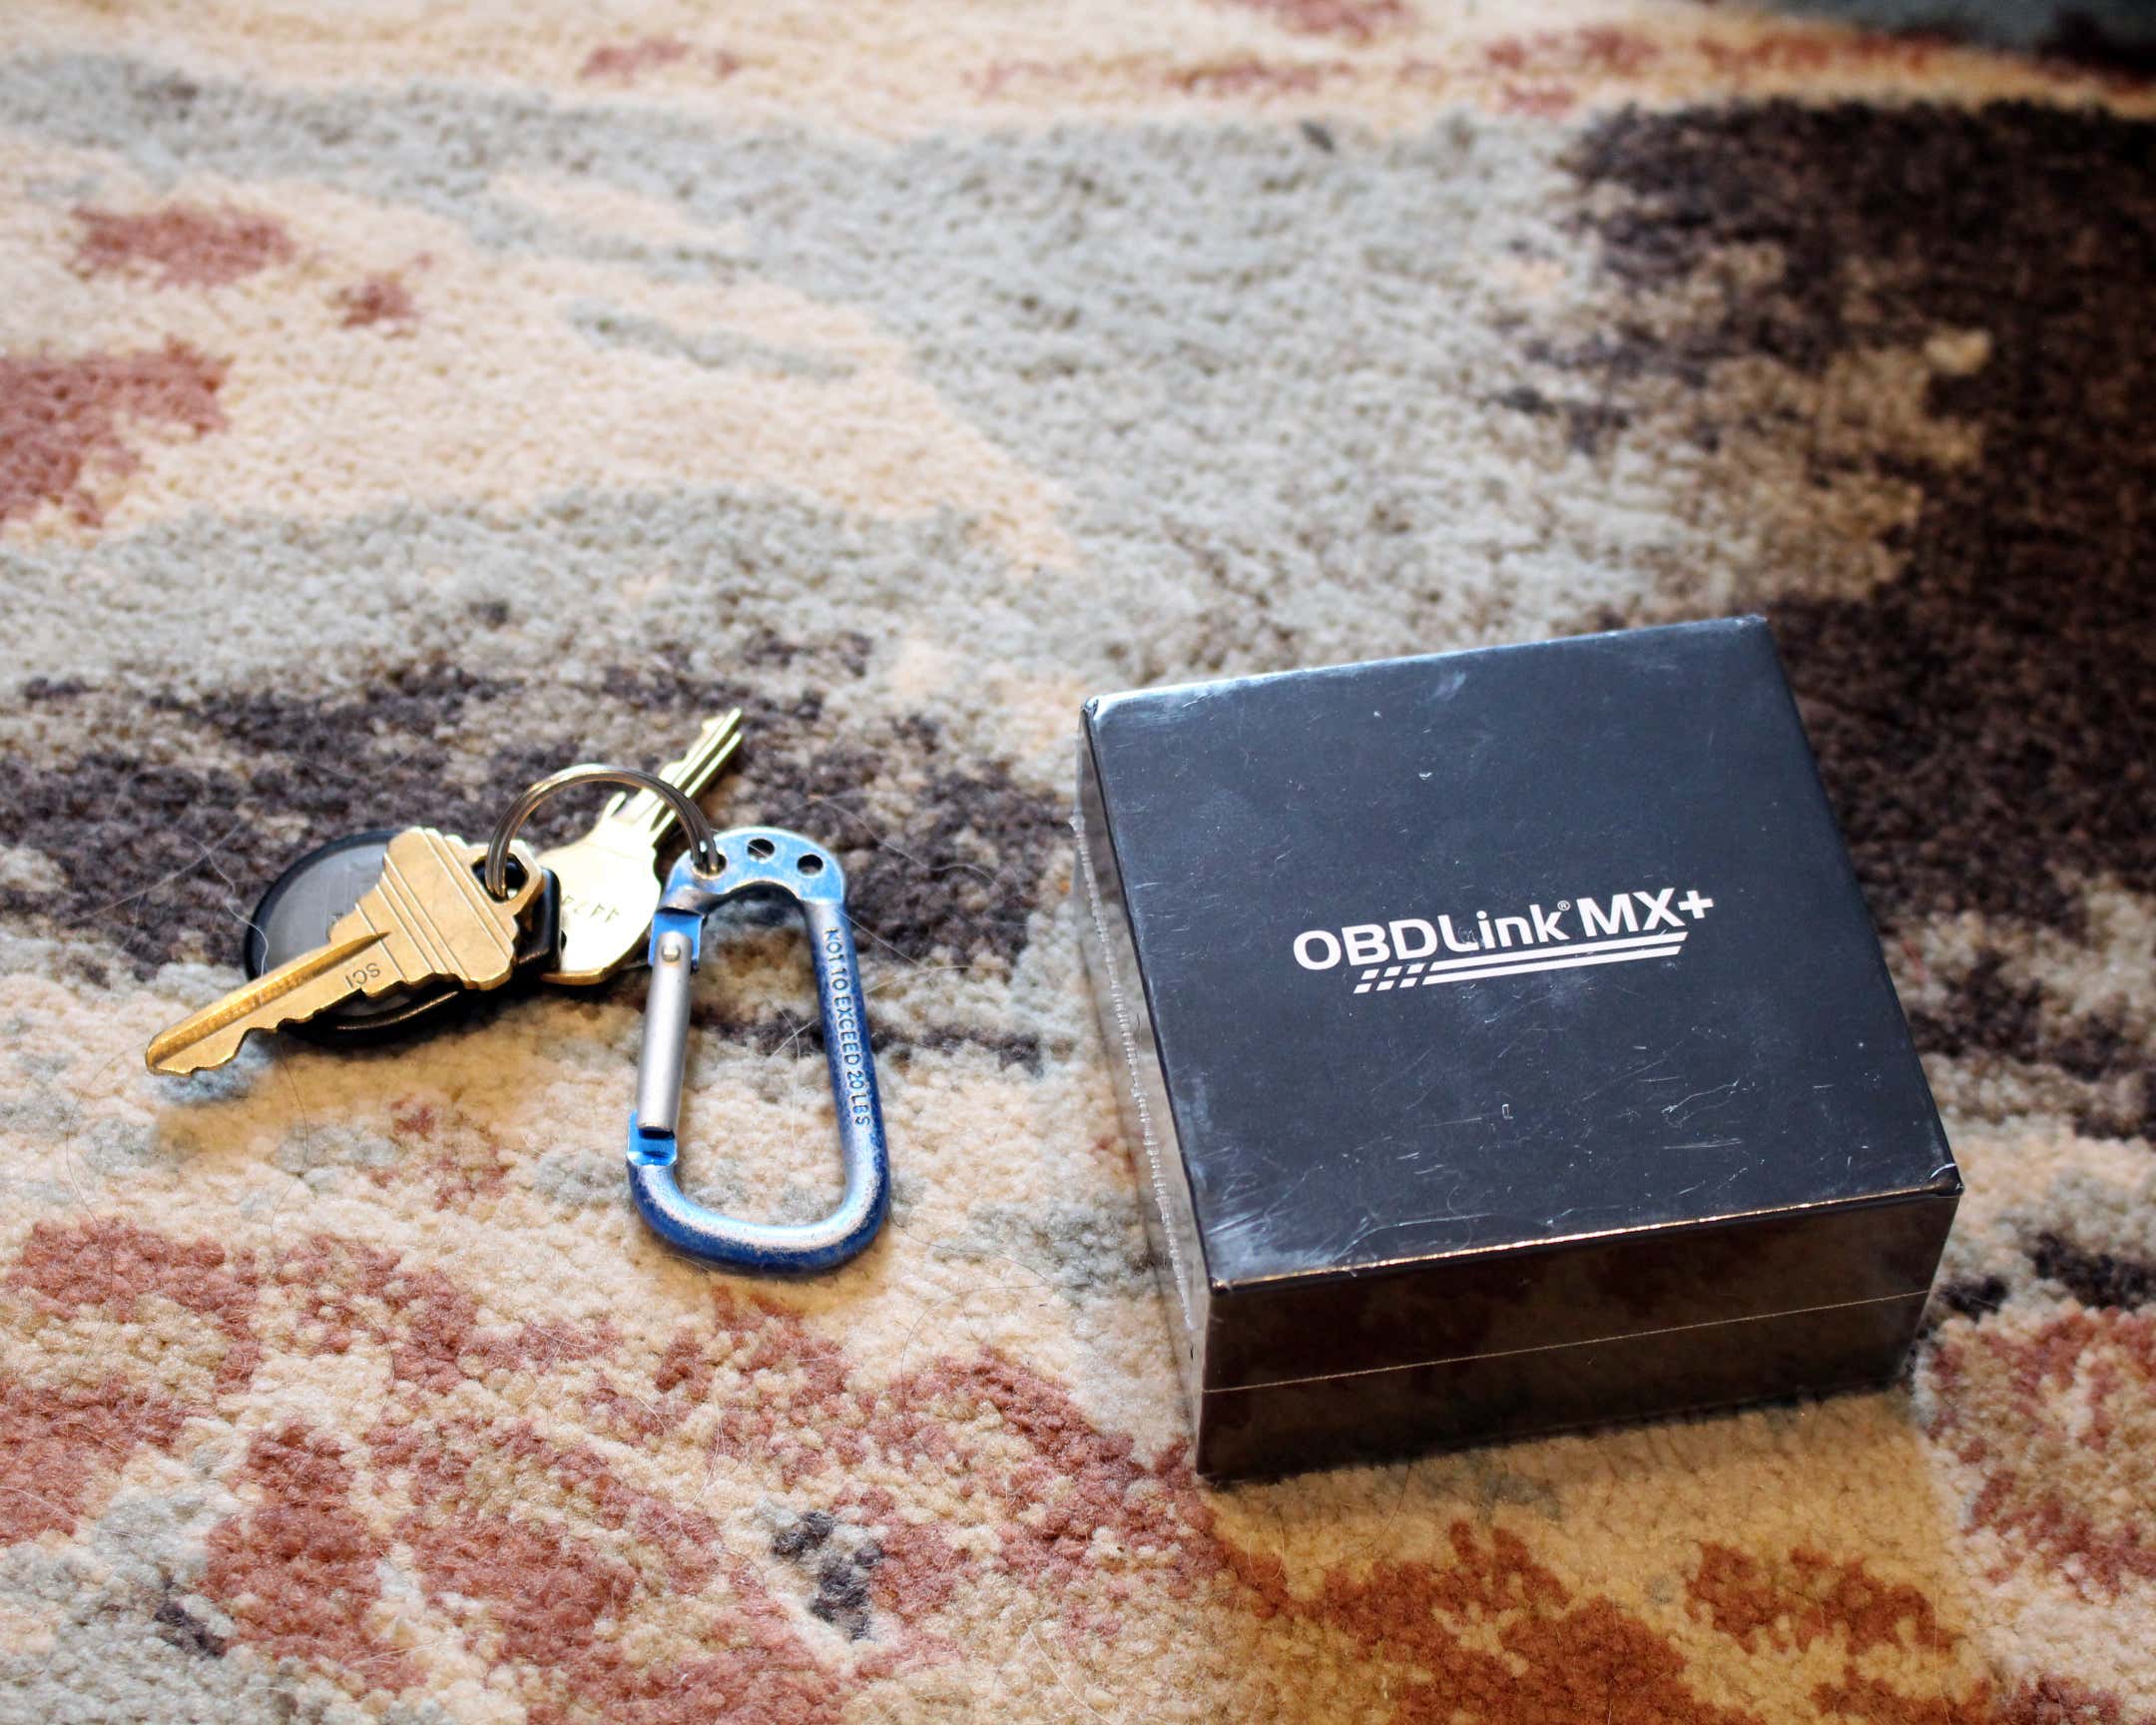 多色地毯顶部钥匙旁边的OBDLink MX+黑匣子。